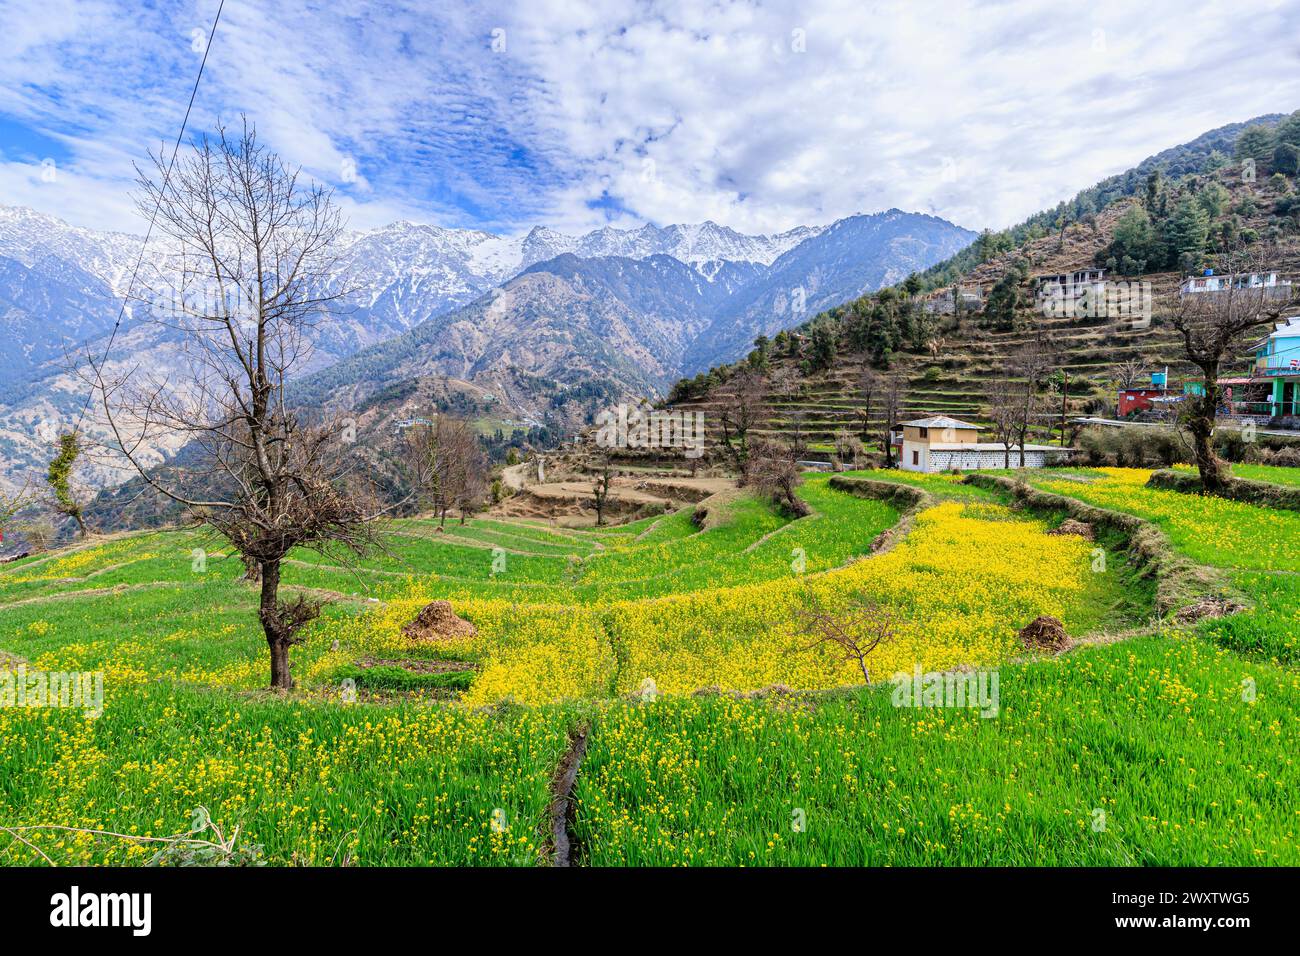 Vista panoramica da Naddi View Point su campi terrazzati pieni di fiori fino alle imponenti e pittoresche montagne innevate della catena himalayana Dhauladhar Foto Stock